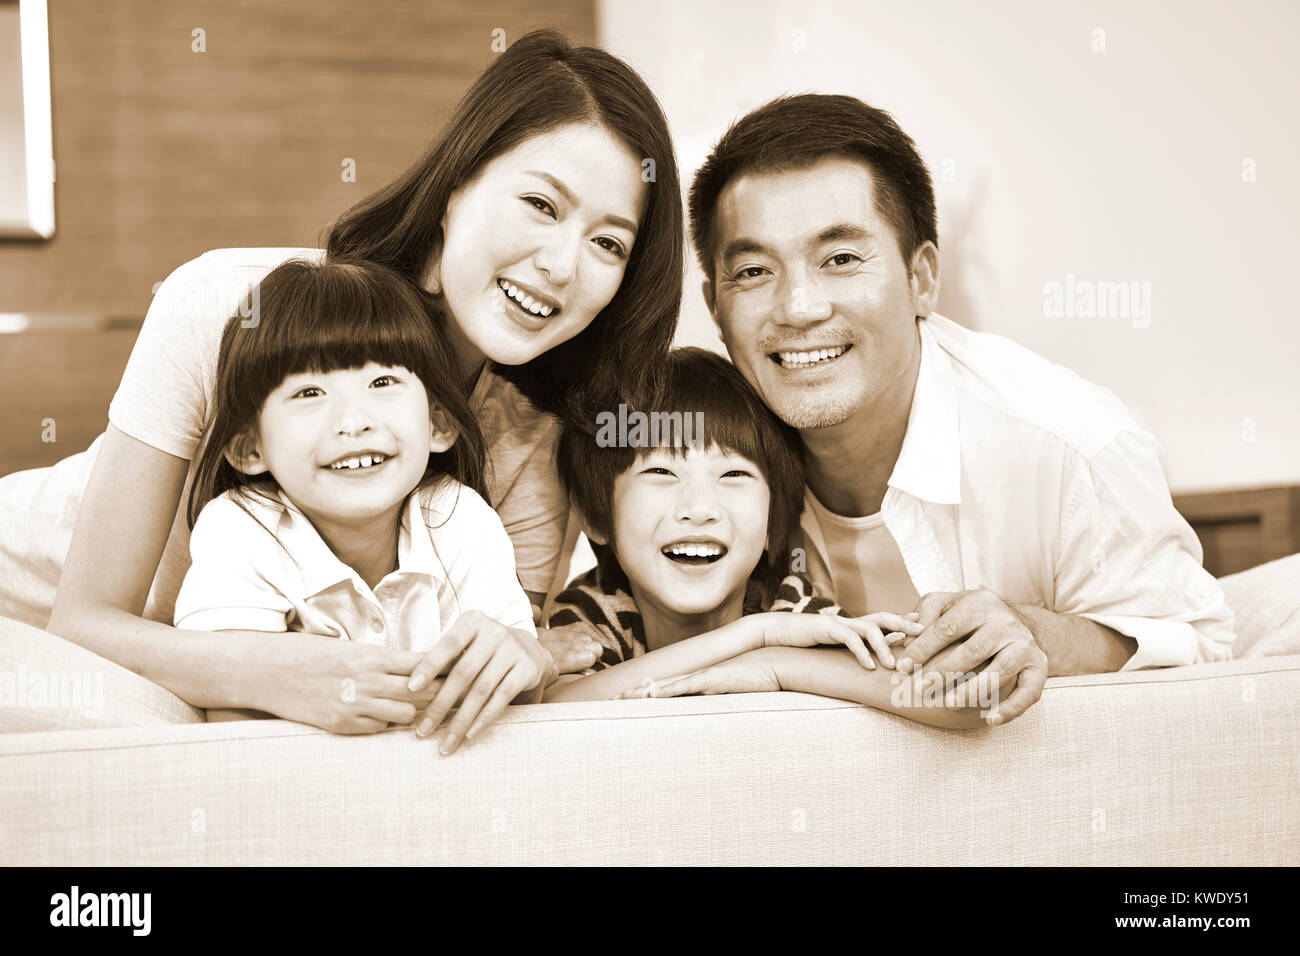 Portrait d'une famille avec deux enfants asiatiques, heureux et souriant, noir et blanc, sépia. Banque D'Images